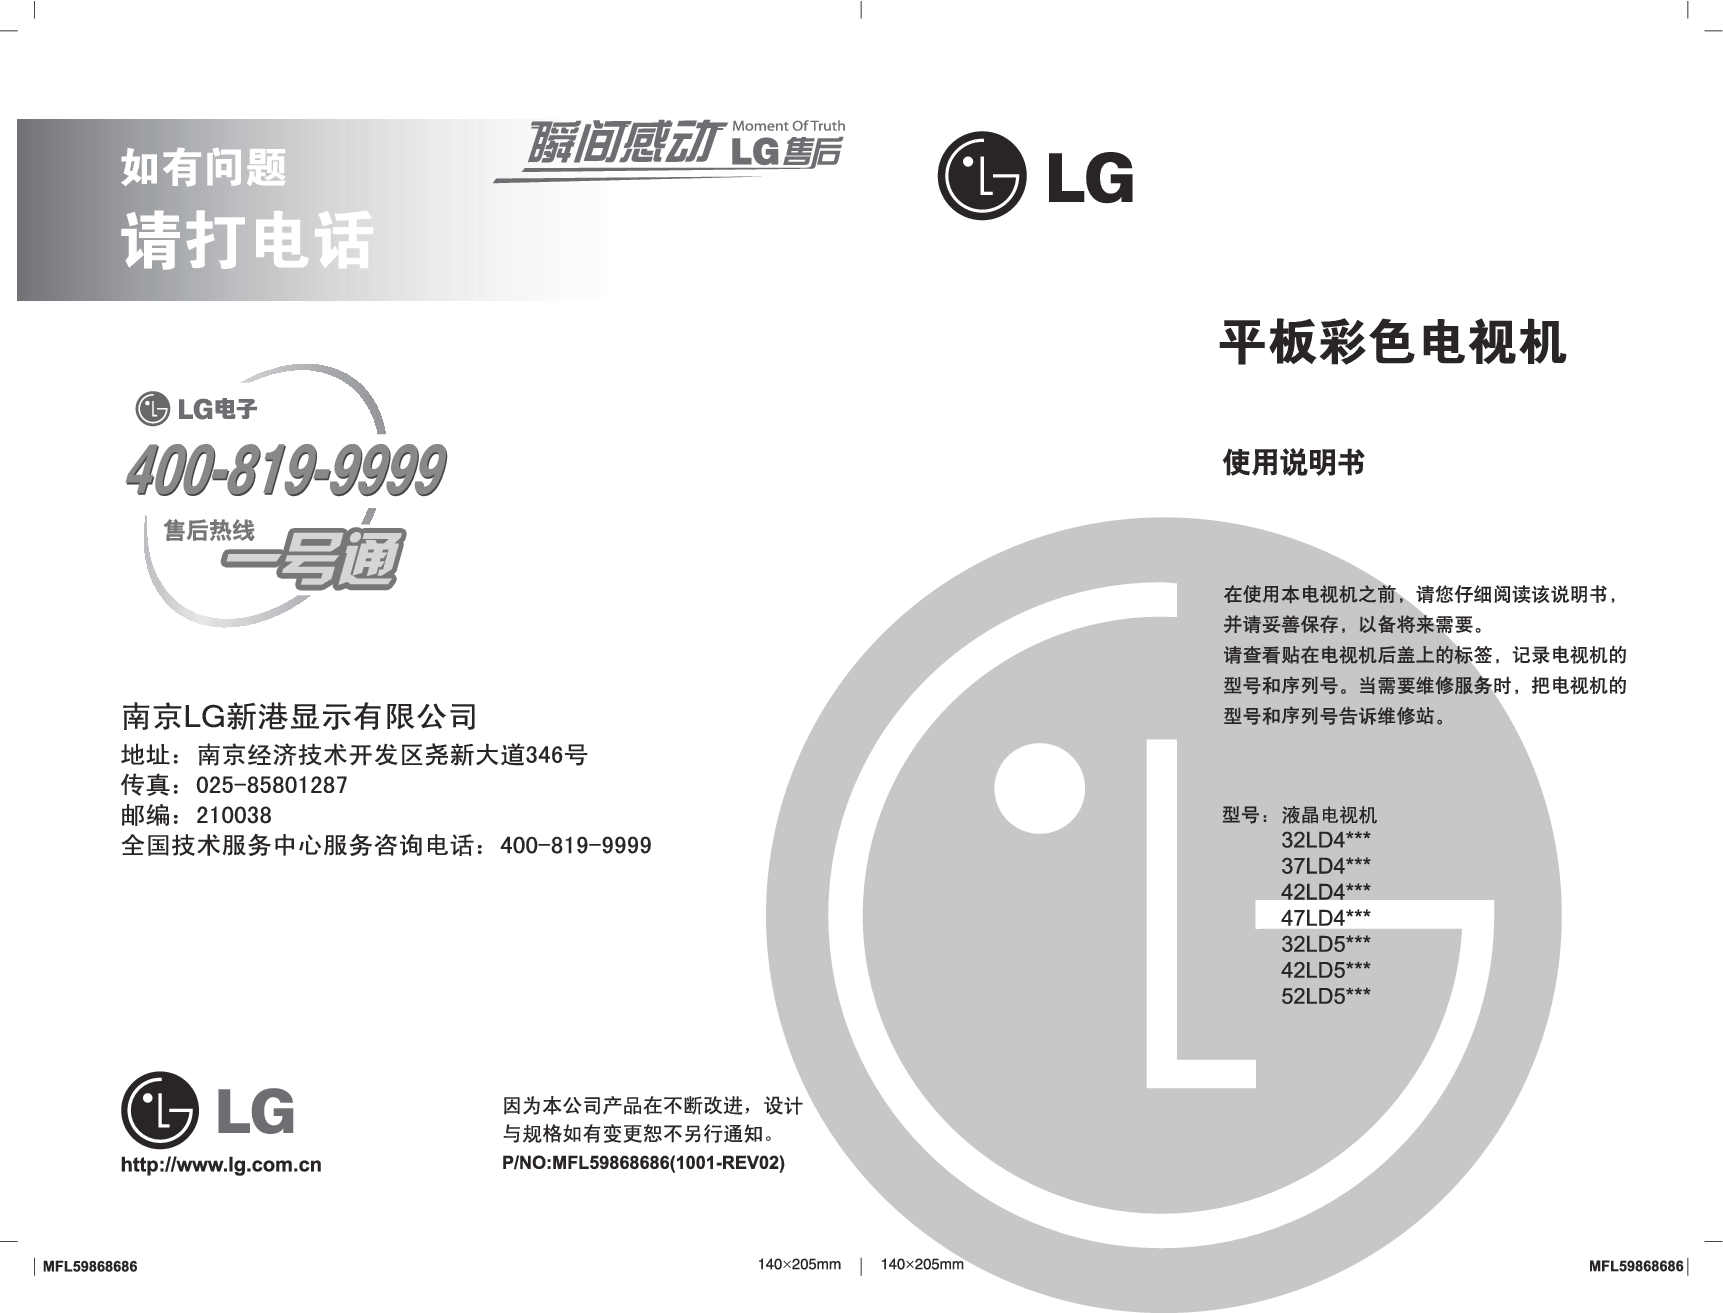 LG 32LD450, 42LD420-CA, 52LD550-CB 使用说明书 封面